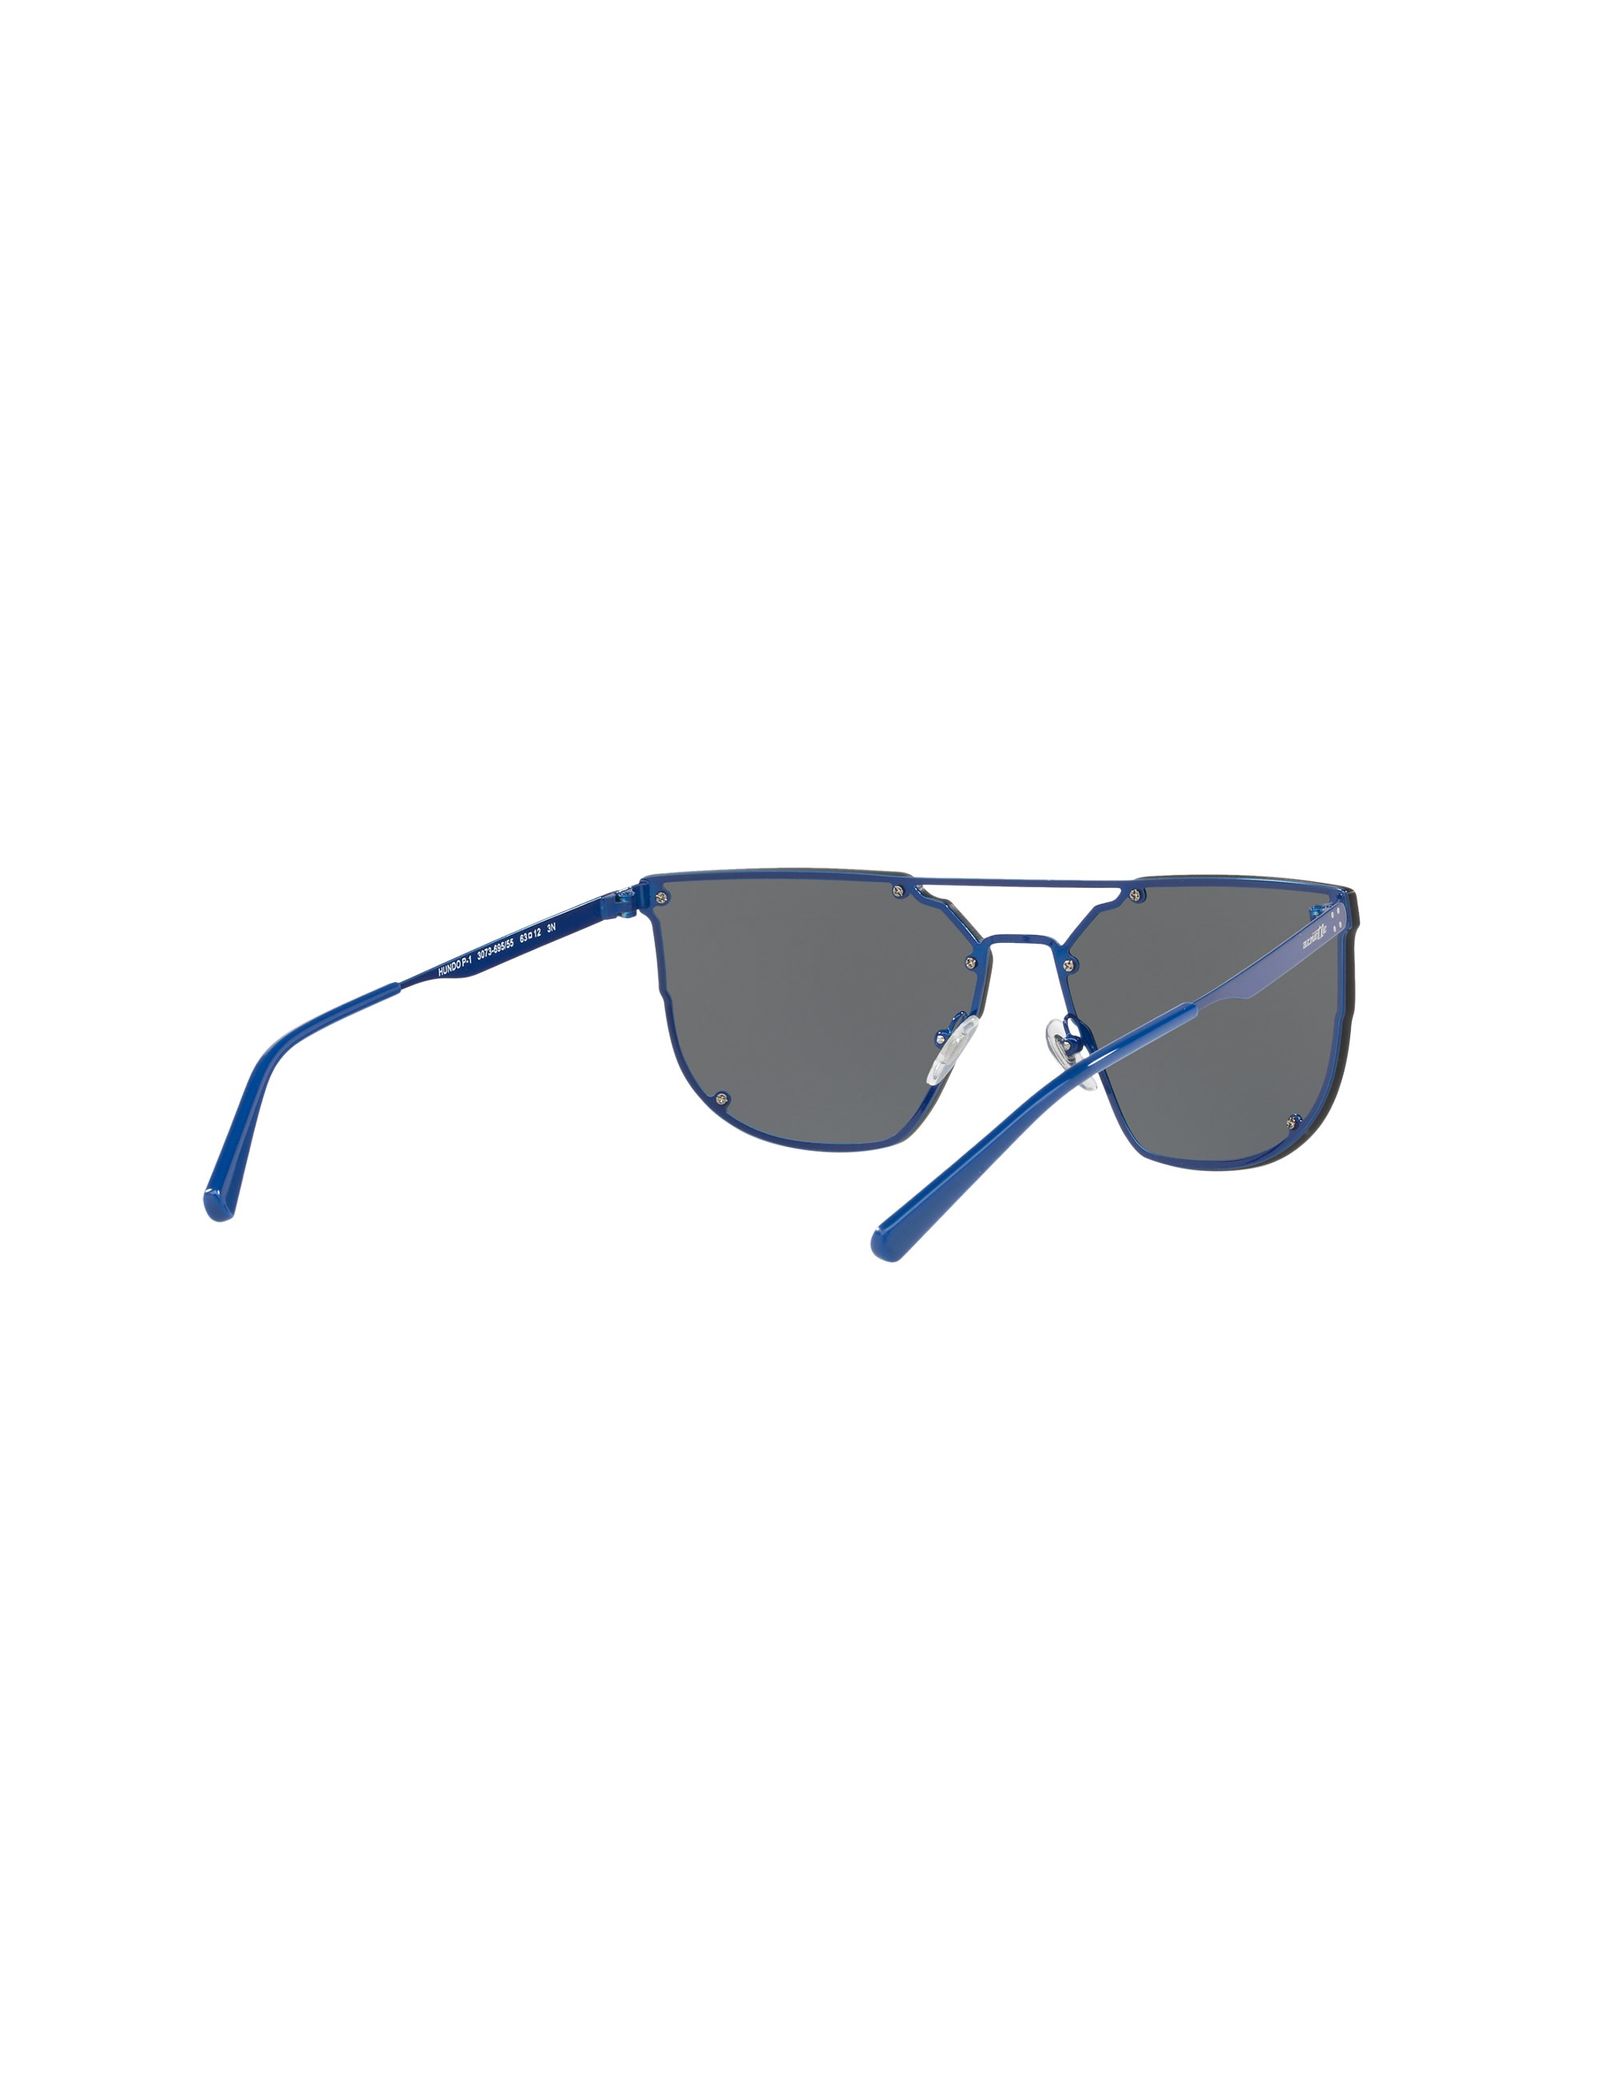 عینک آفتابی خلبانی مردانه - آرنت - آبي - 6